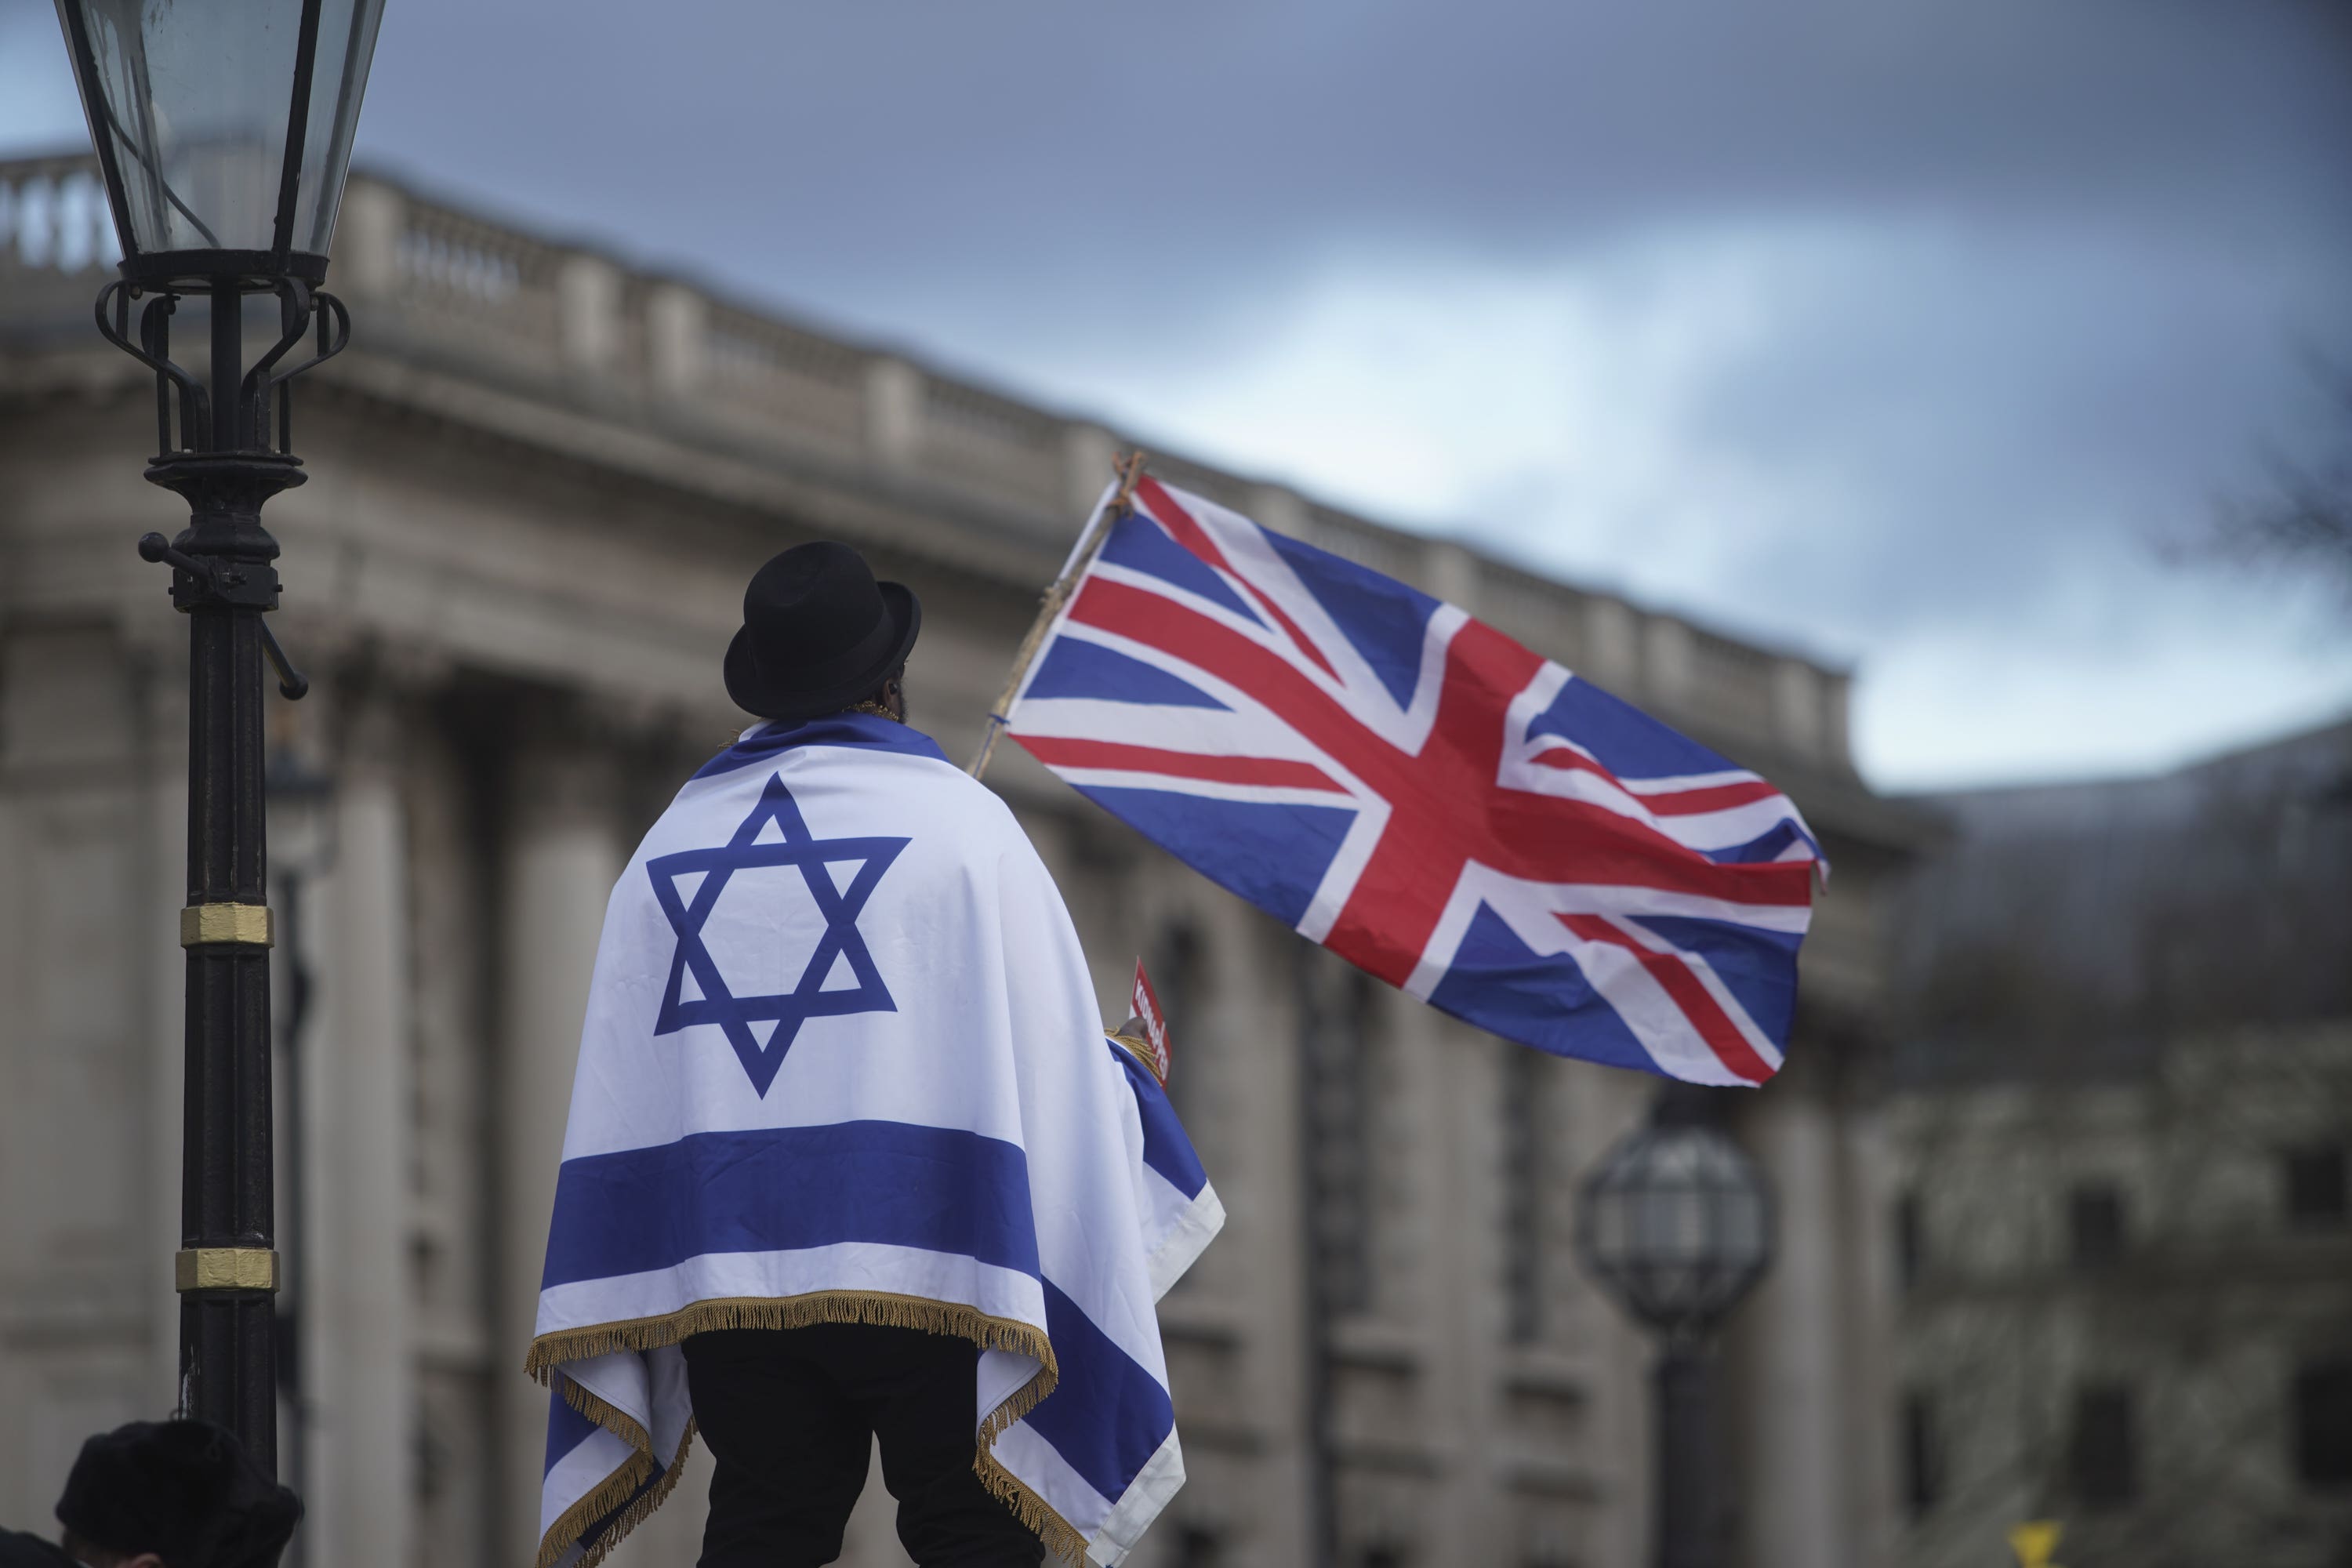 Israeli and UK flags